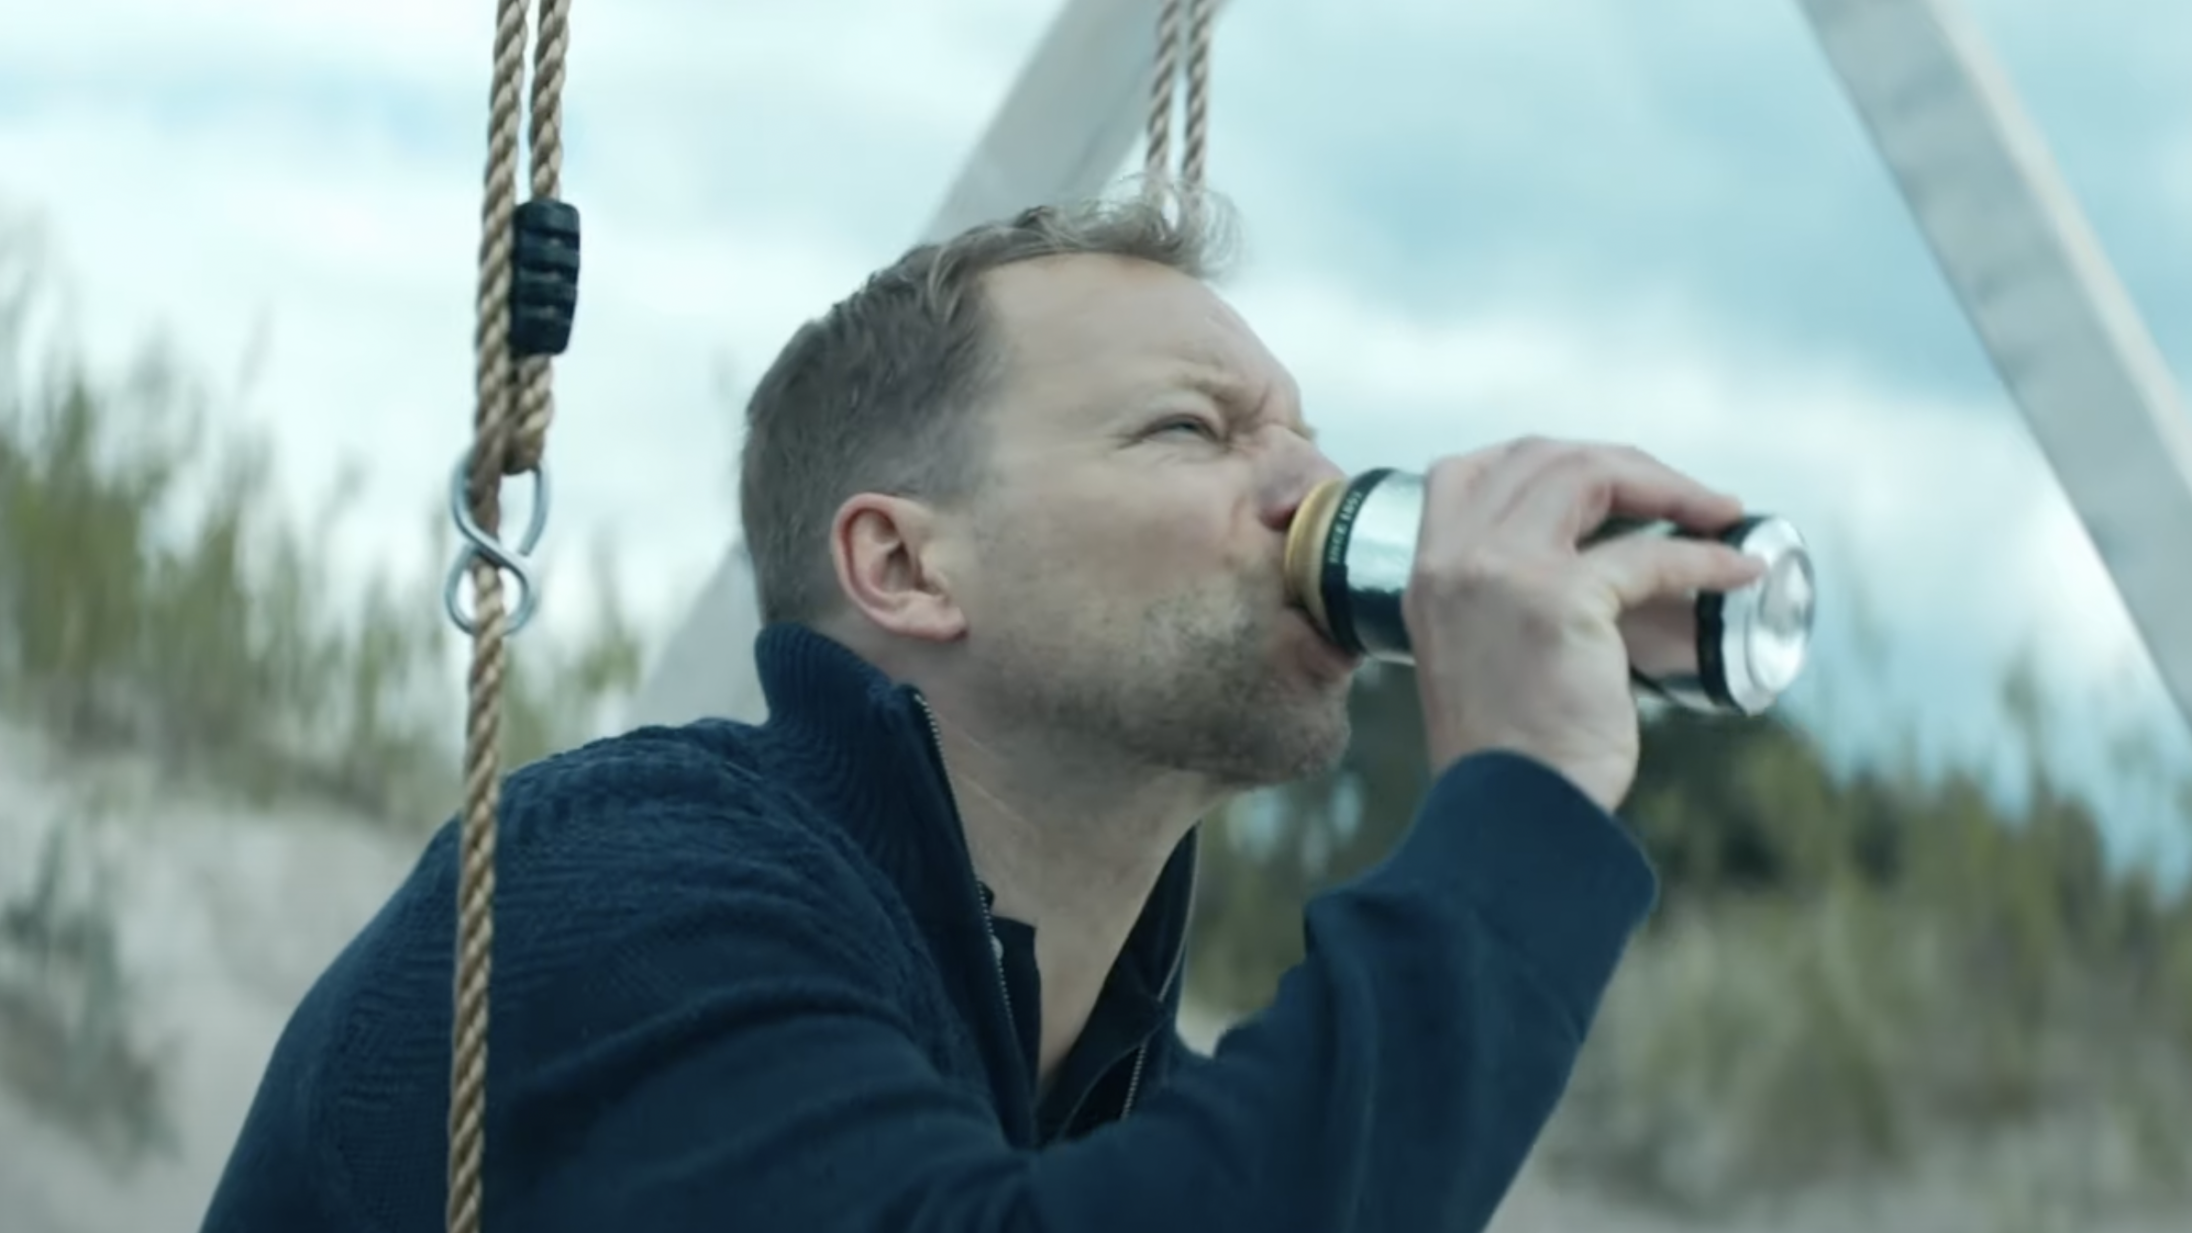 Bornholm pisser polakkerne af i mystisk film – se traileren til ’Fucking Bornholm’